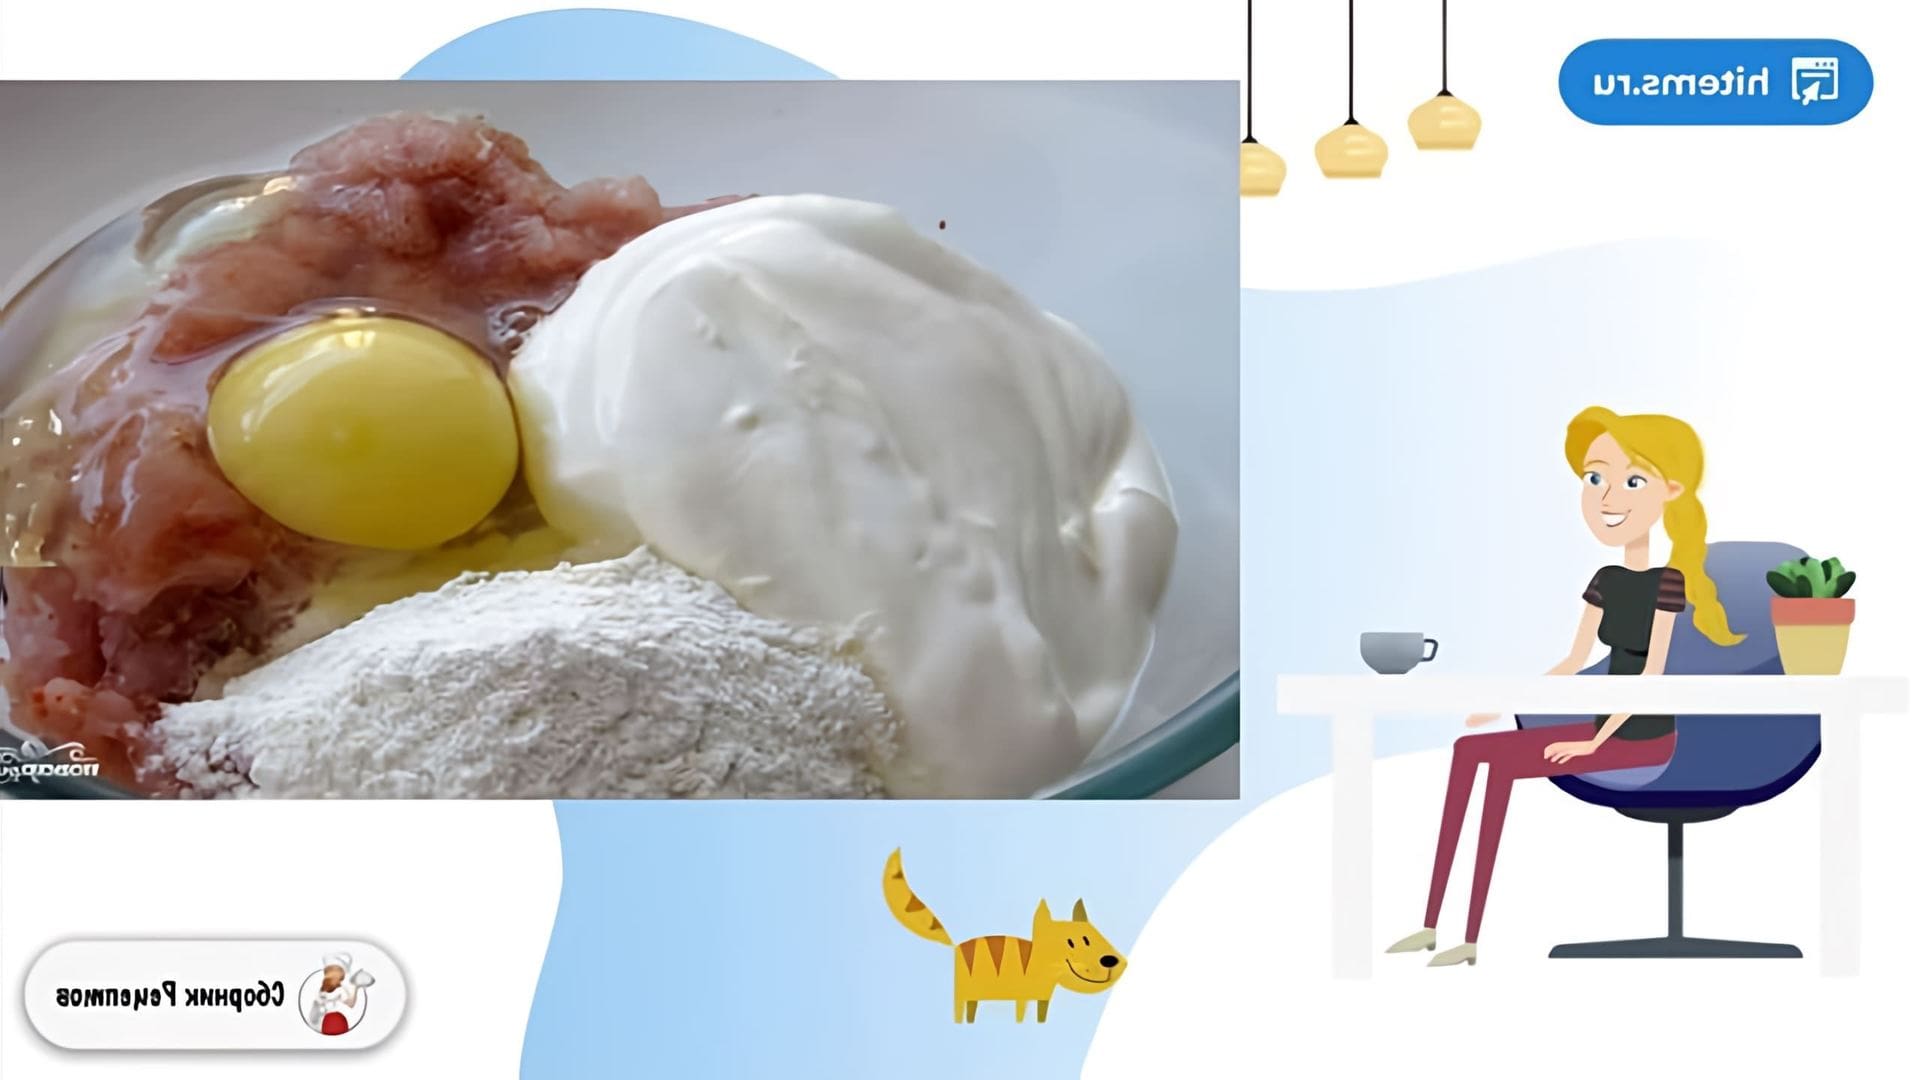 В этом видео демонстрируется рецепт картофельной запеканки с фаршем из индейки